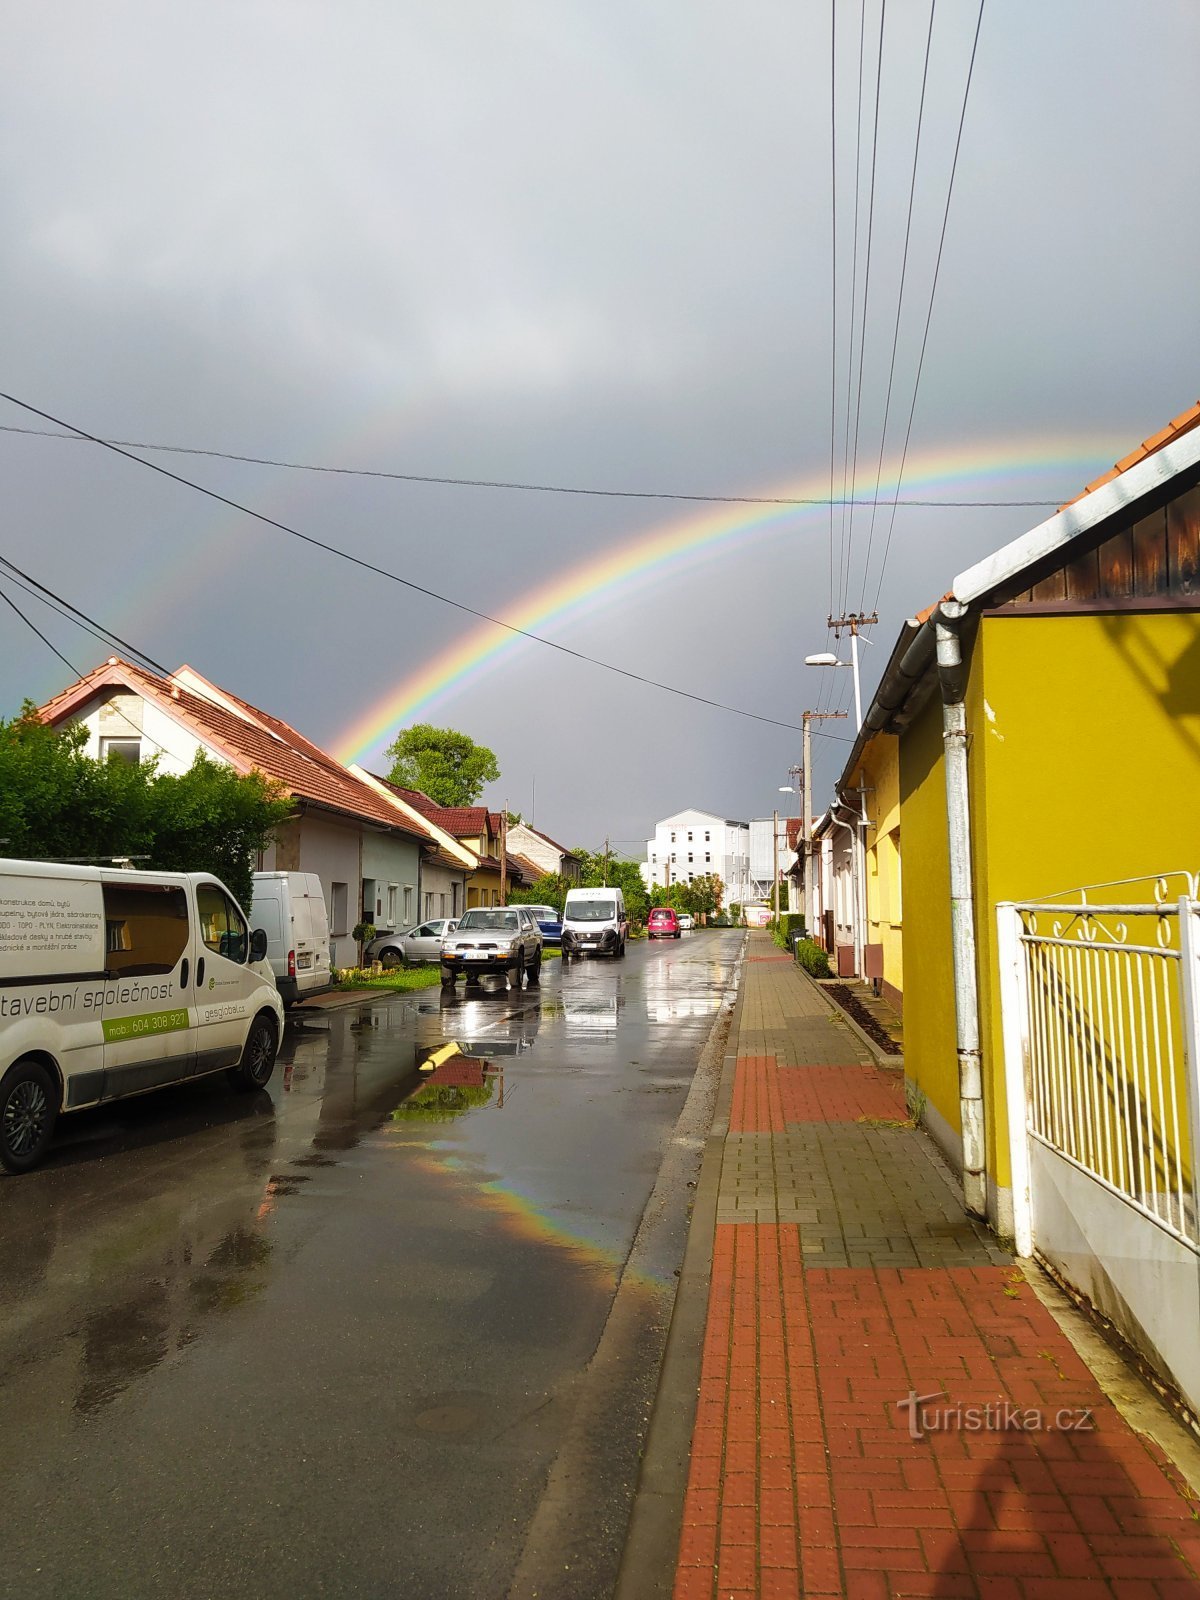 L'arcobaleno sopra la fermata del treno Malenovice - centro